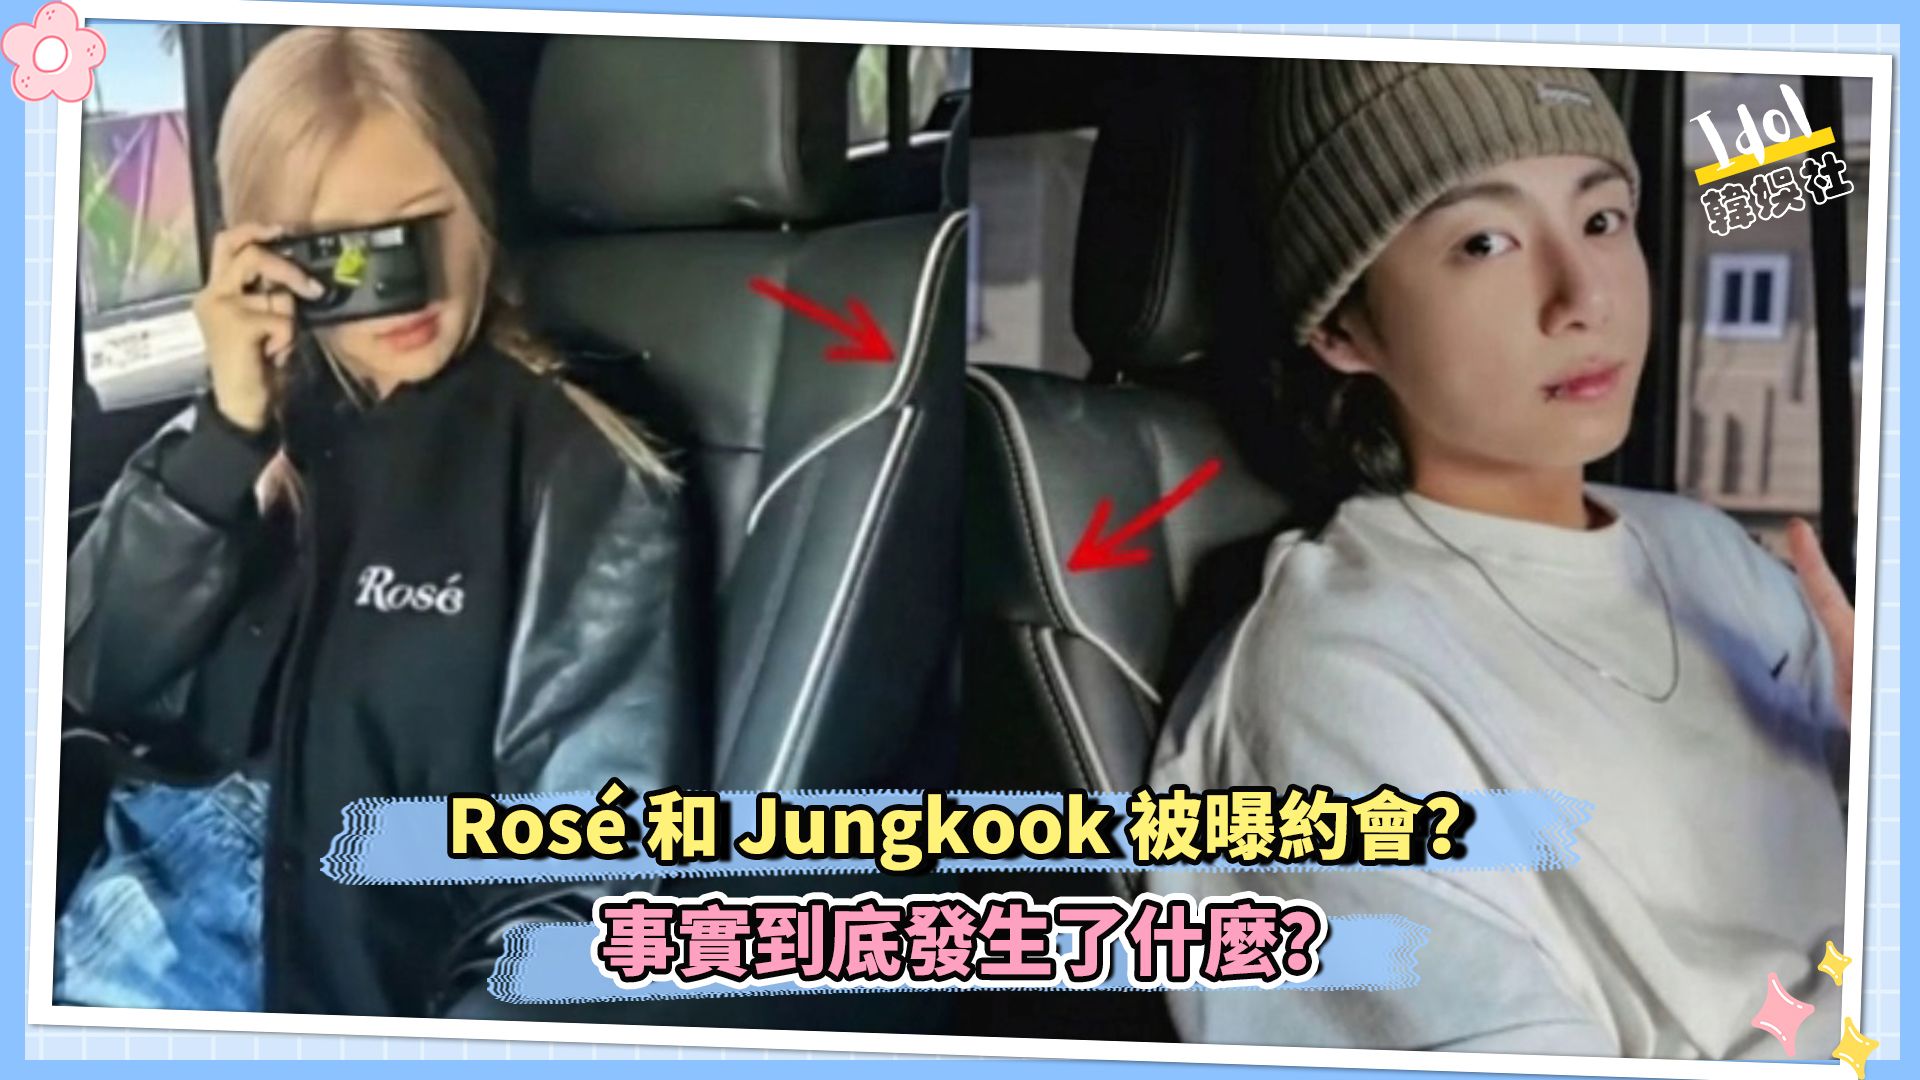 Rosé和Jungkook被曝约会？事实到底发生了什么？